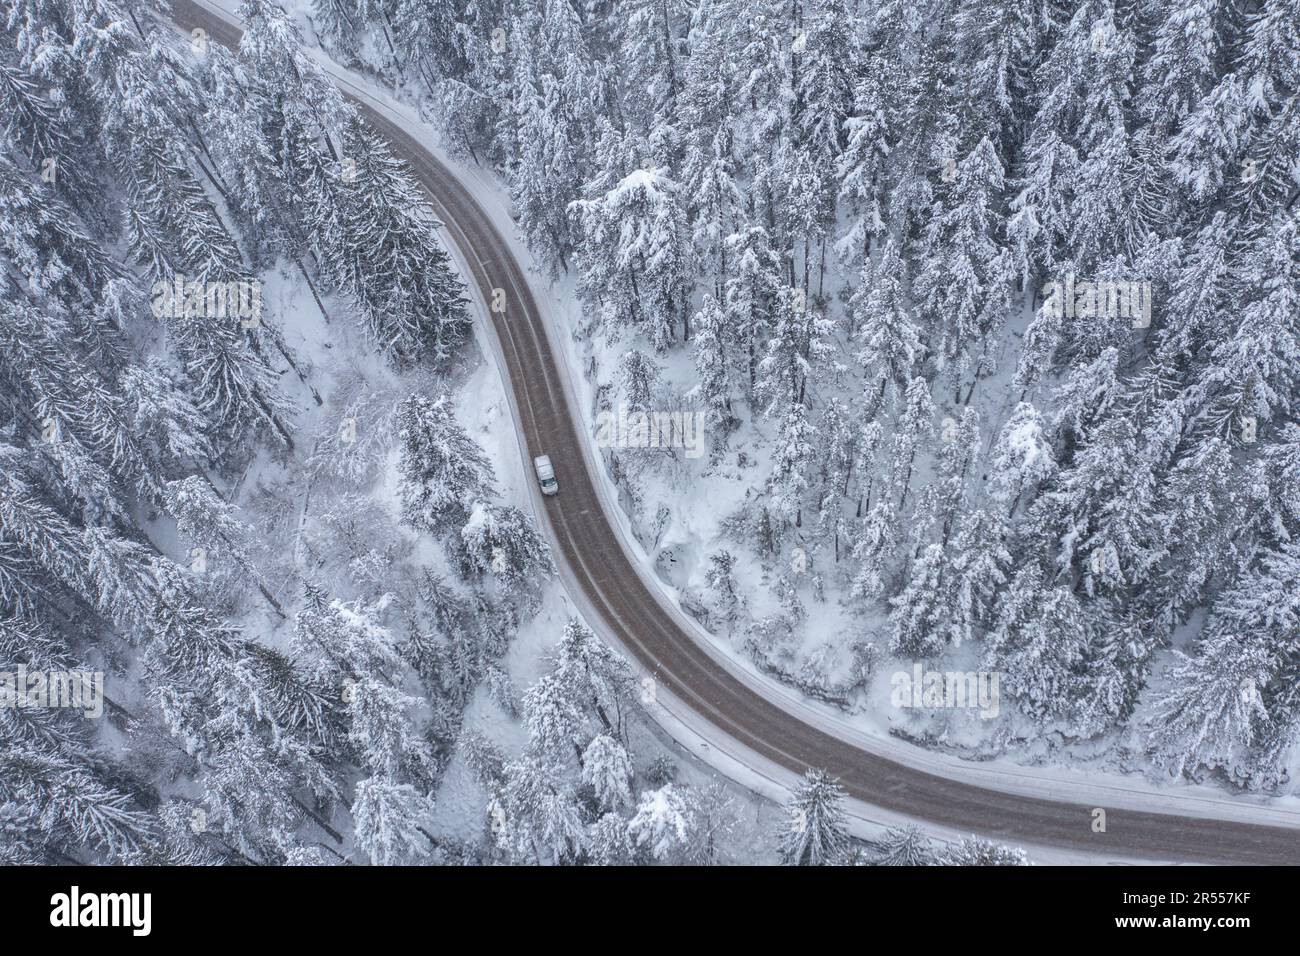 Route de montagne sinueuse et sinueuse dans une forêt de pins avec voiture mobile pendant la chute de neige Banque D'Images